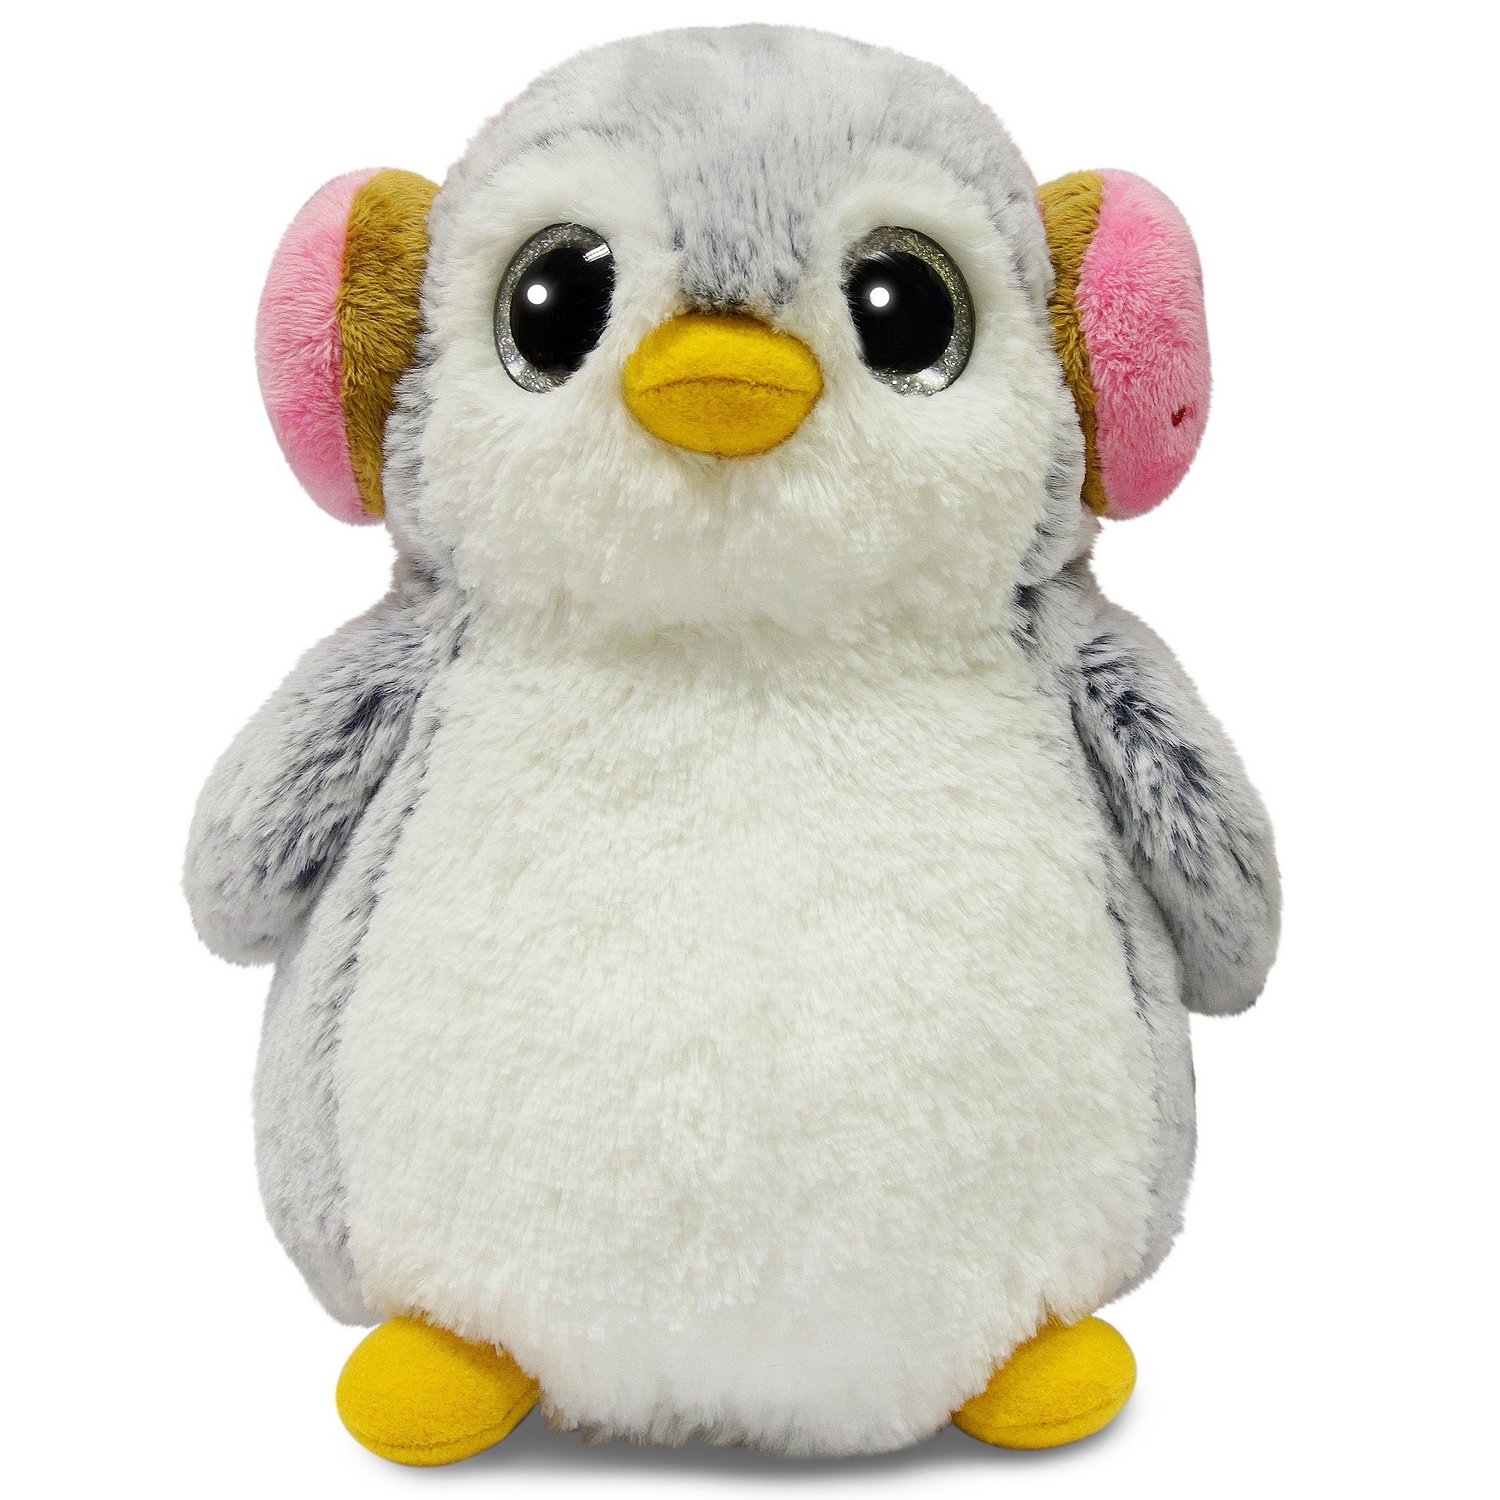 Игрушка мягкая Aurora Пингвин в наушниках 161476D